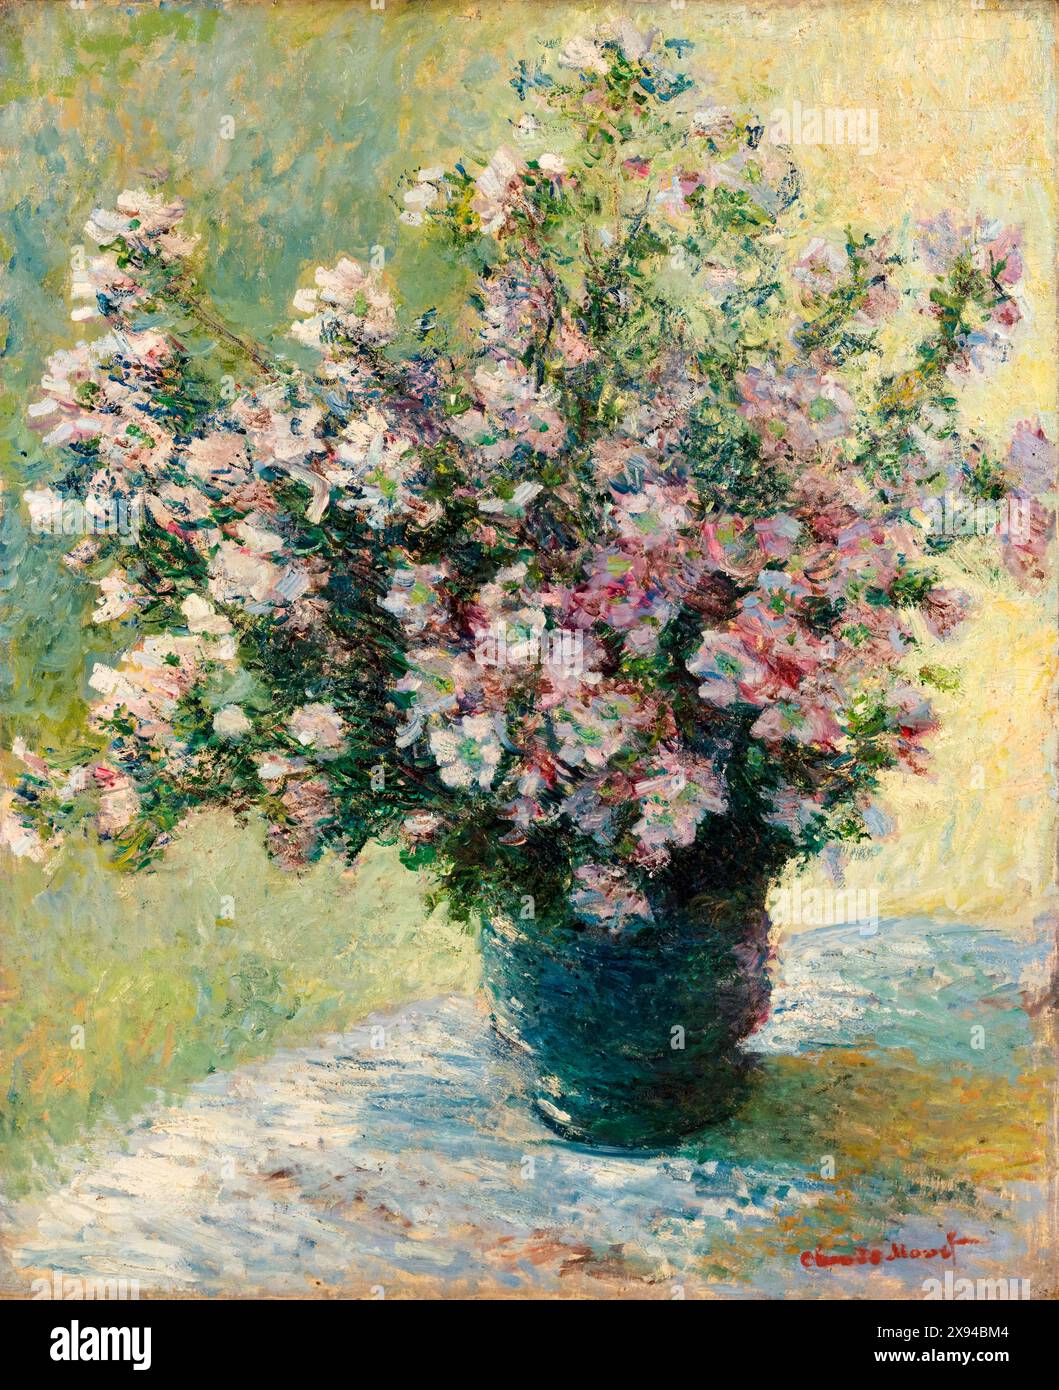 Claude Monet, vase de fleurs, natures mortes peinture à l'huile sur toile, 1881-1882 Banque D'Images